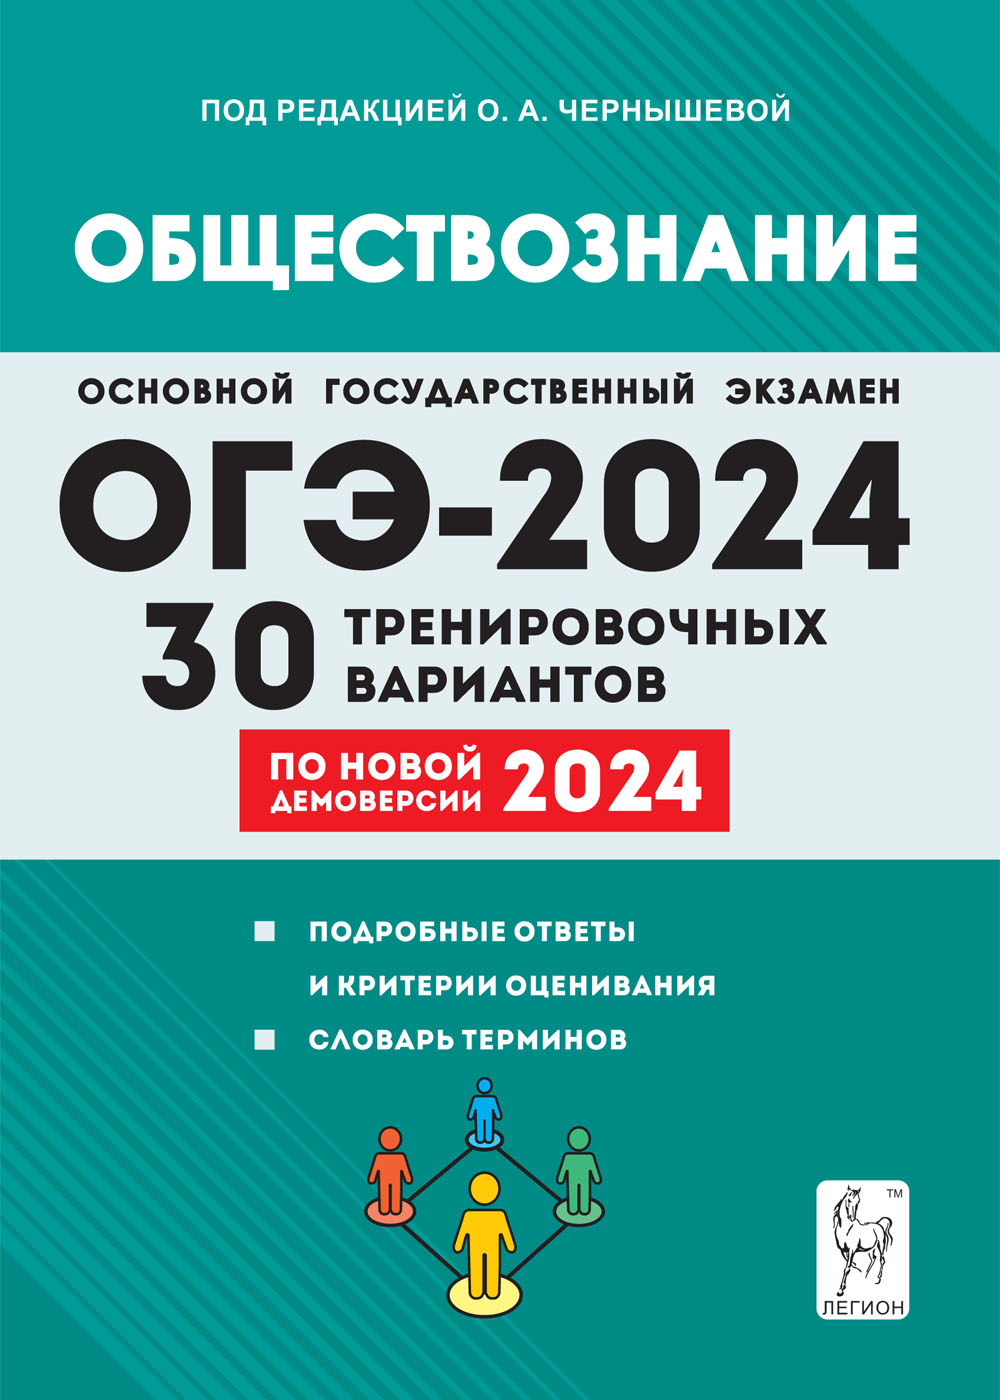 Обществознание. Подготовка к ОГЭ-2024. 30 тренировочных вариантов по демоверсии 2024 года. 9-й класс